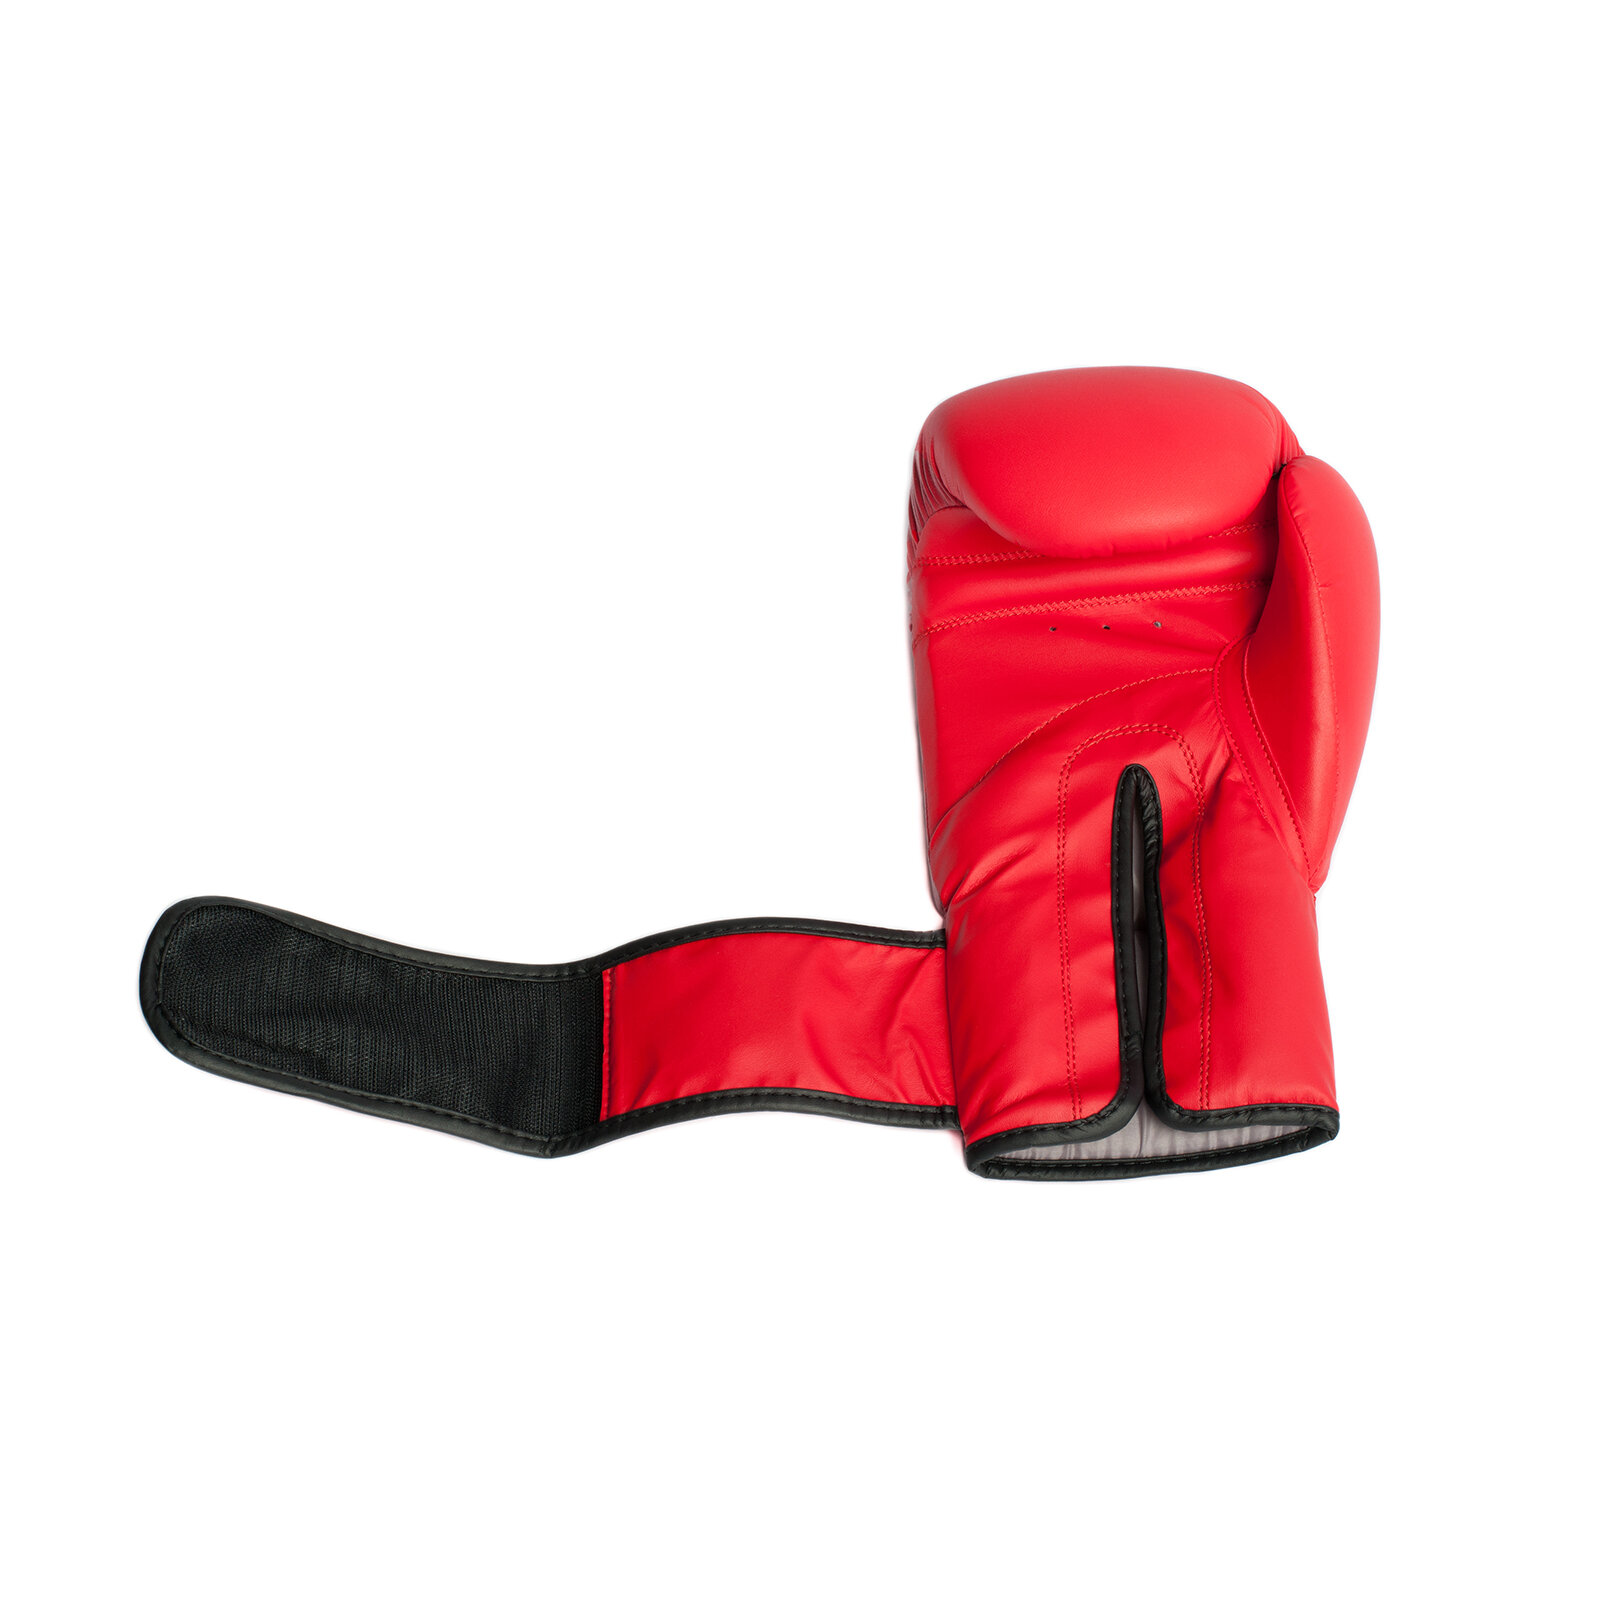 Перчатки для бокса FORCE Gravity, искусственная кожа, красные, 10 унций